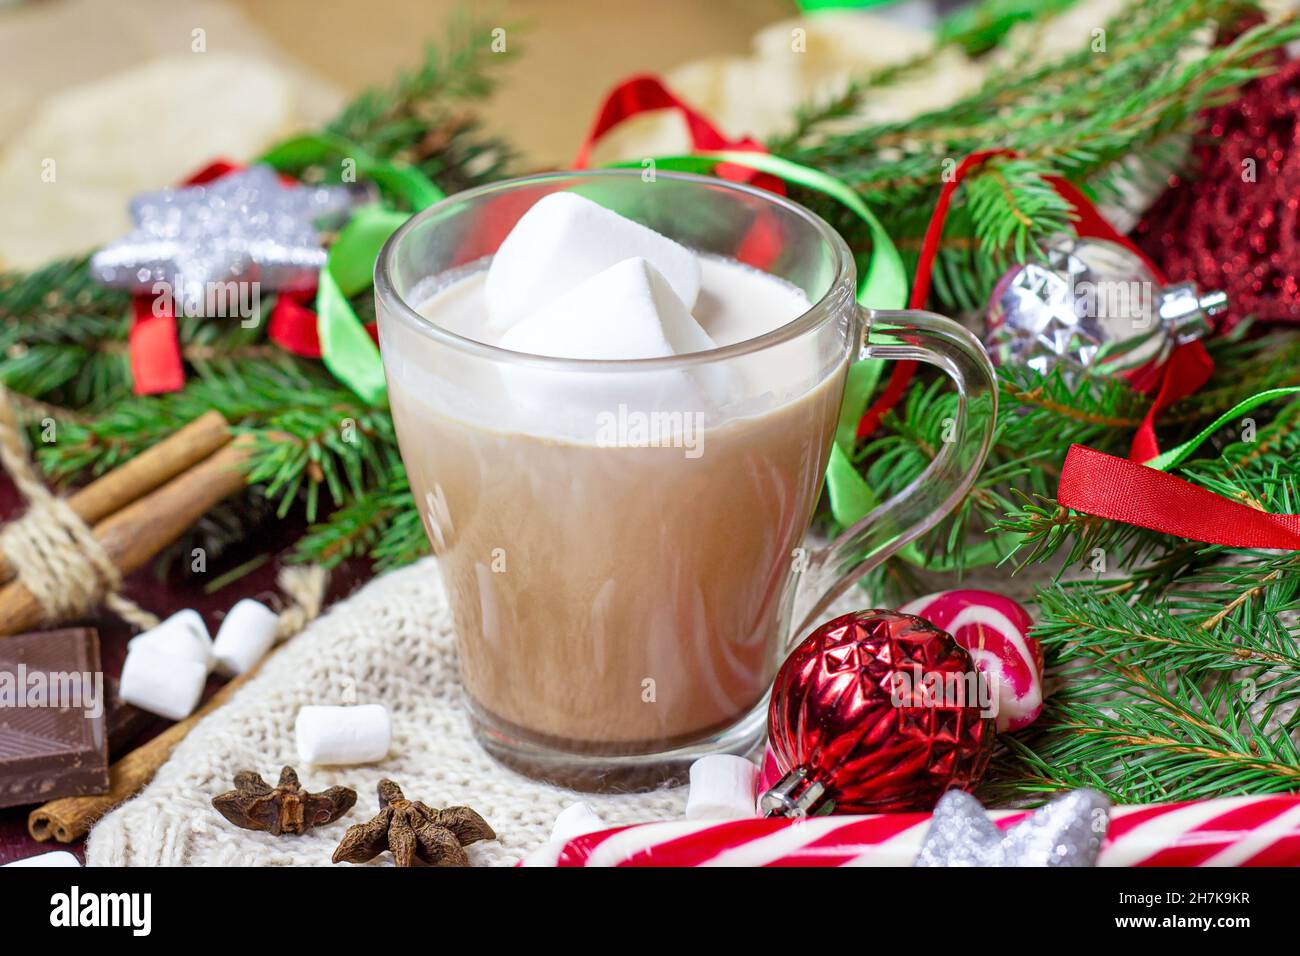 Cioccolata calda Natale e Capodanno celebrazione bevanda di cacao in una tazza di vetro con rami di abete, decorazioni per le vacanze e dolce rosso lollipop a strisce Foto Stock